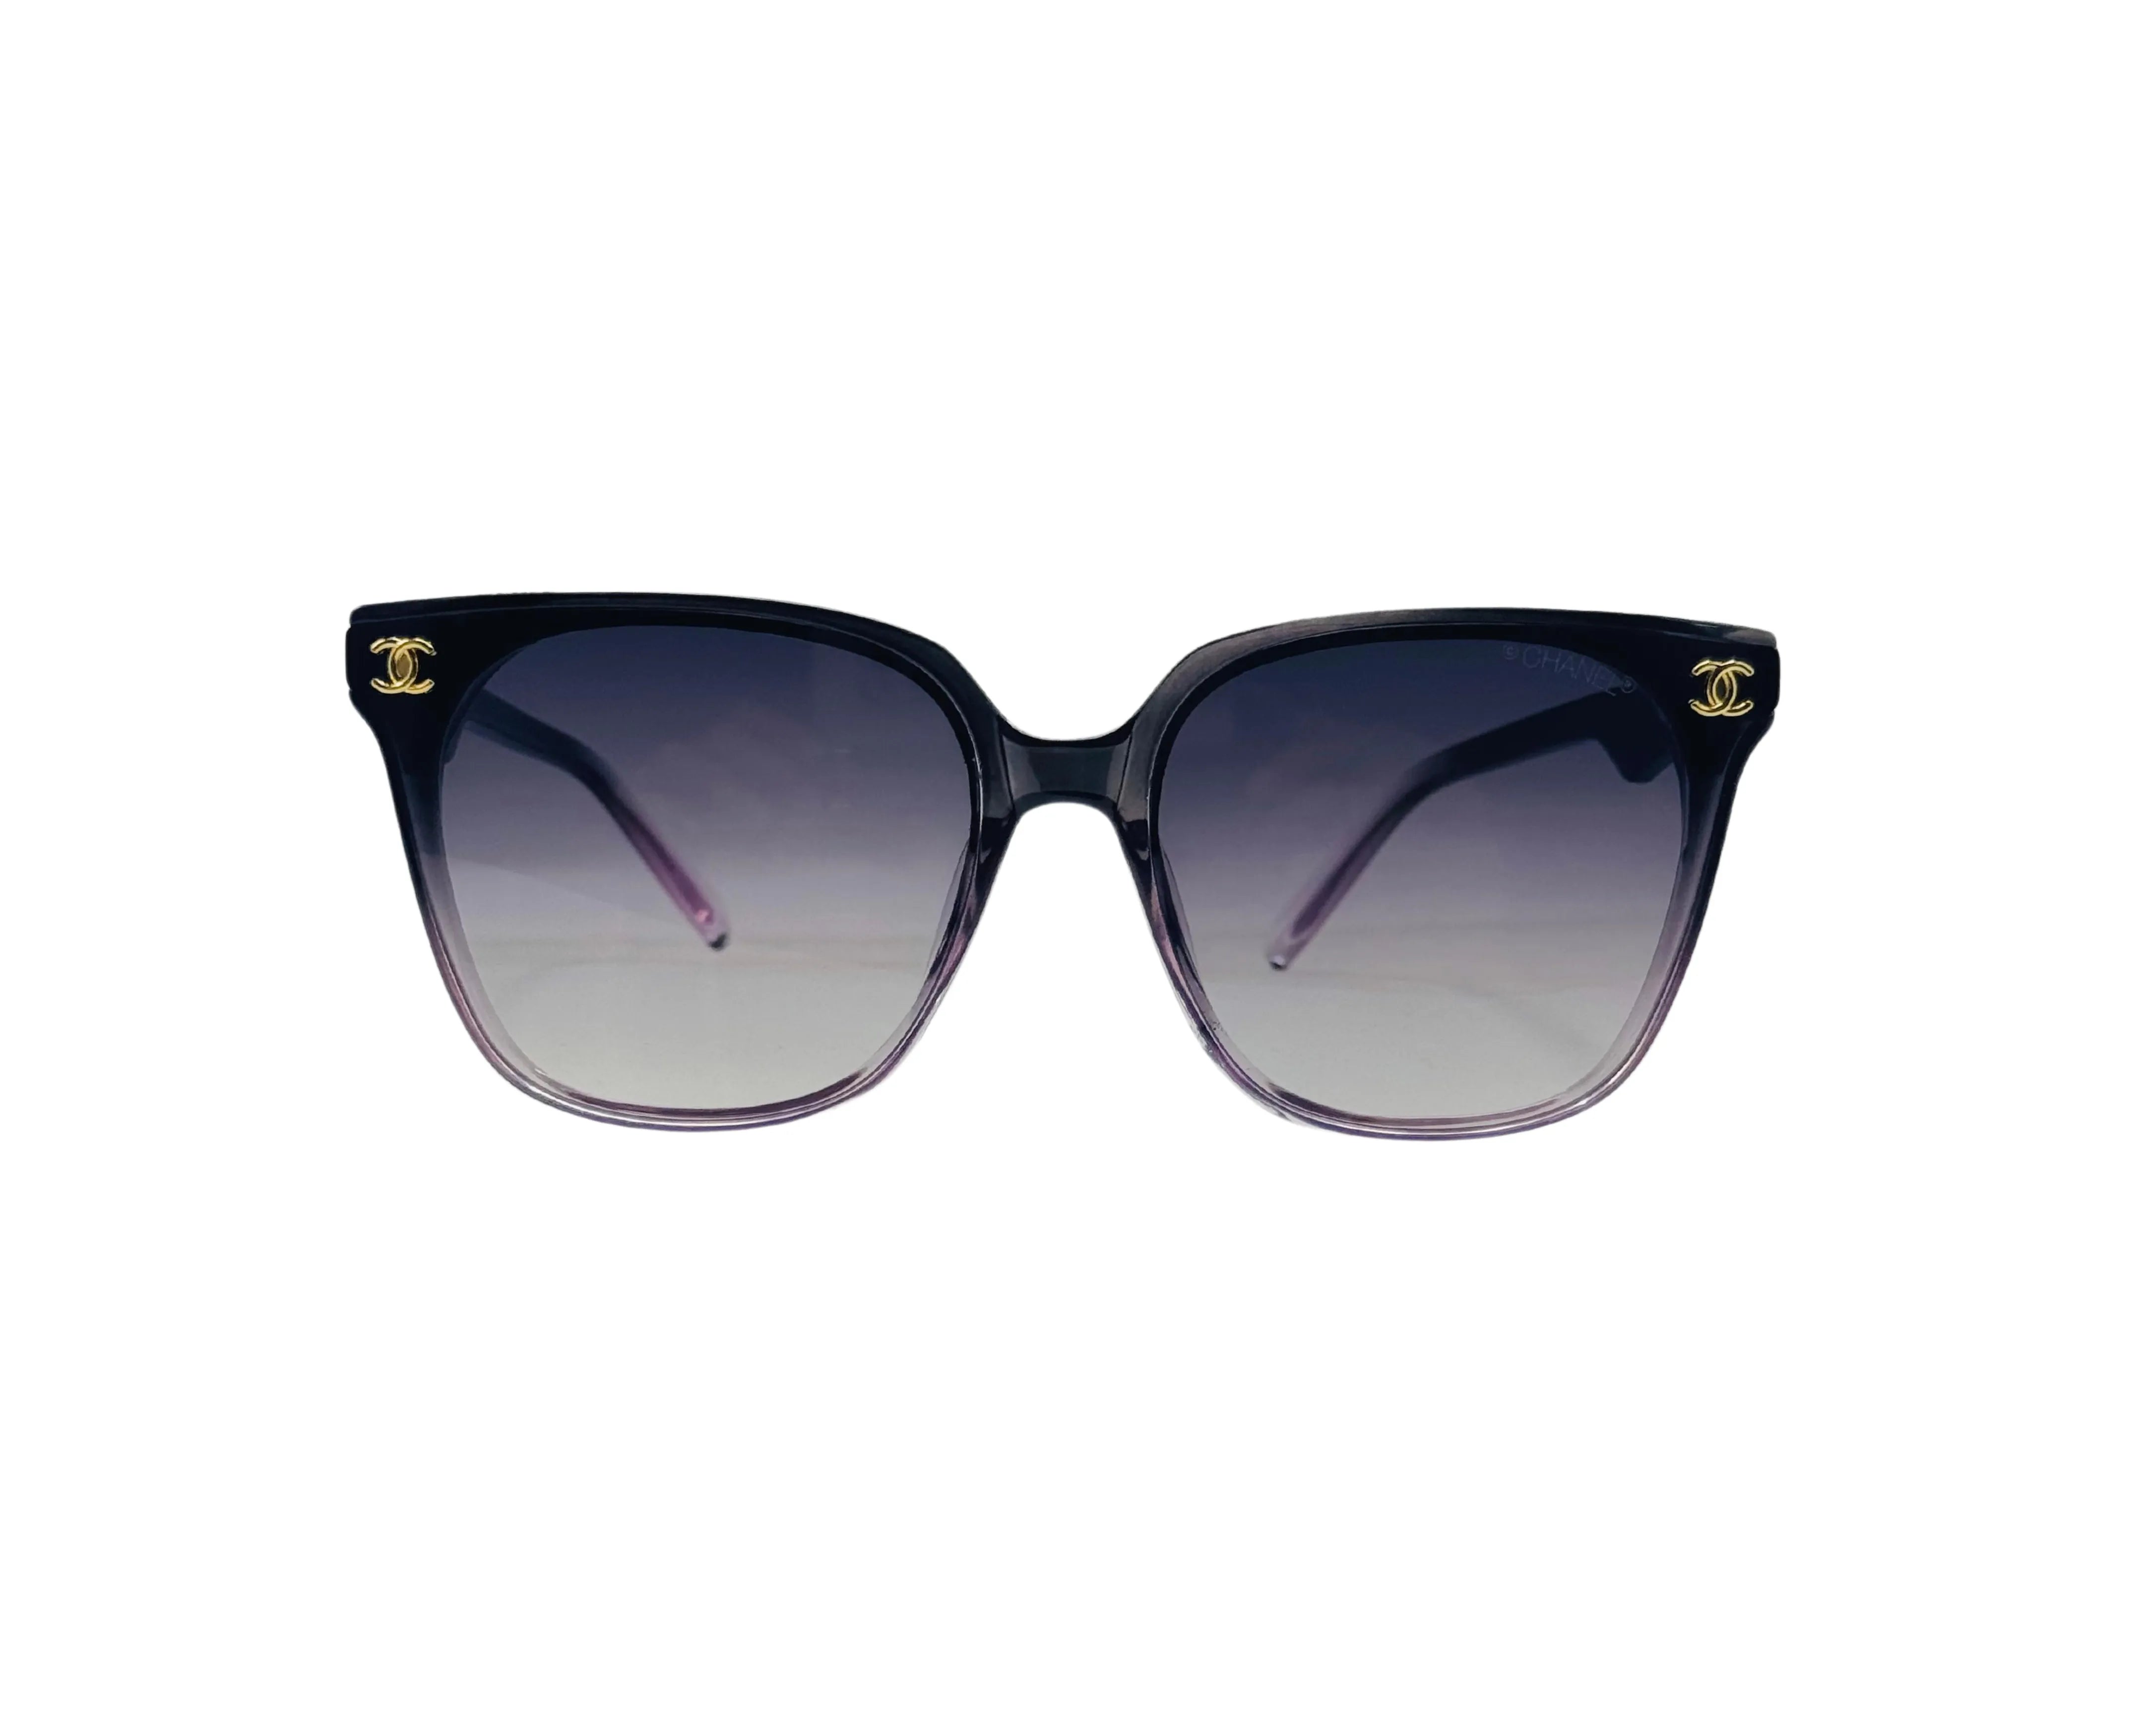 NS Deluxe - 36236 - Black Purple - Sunglasses